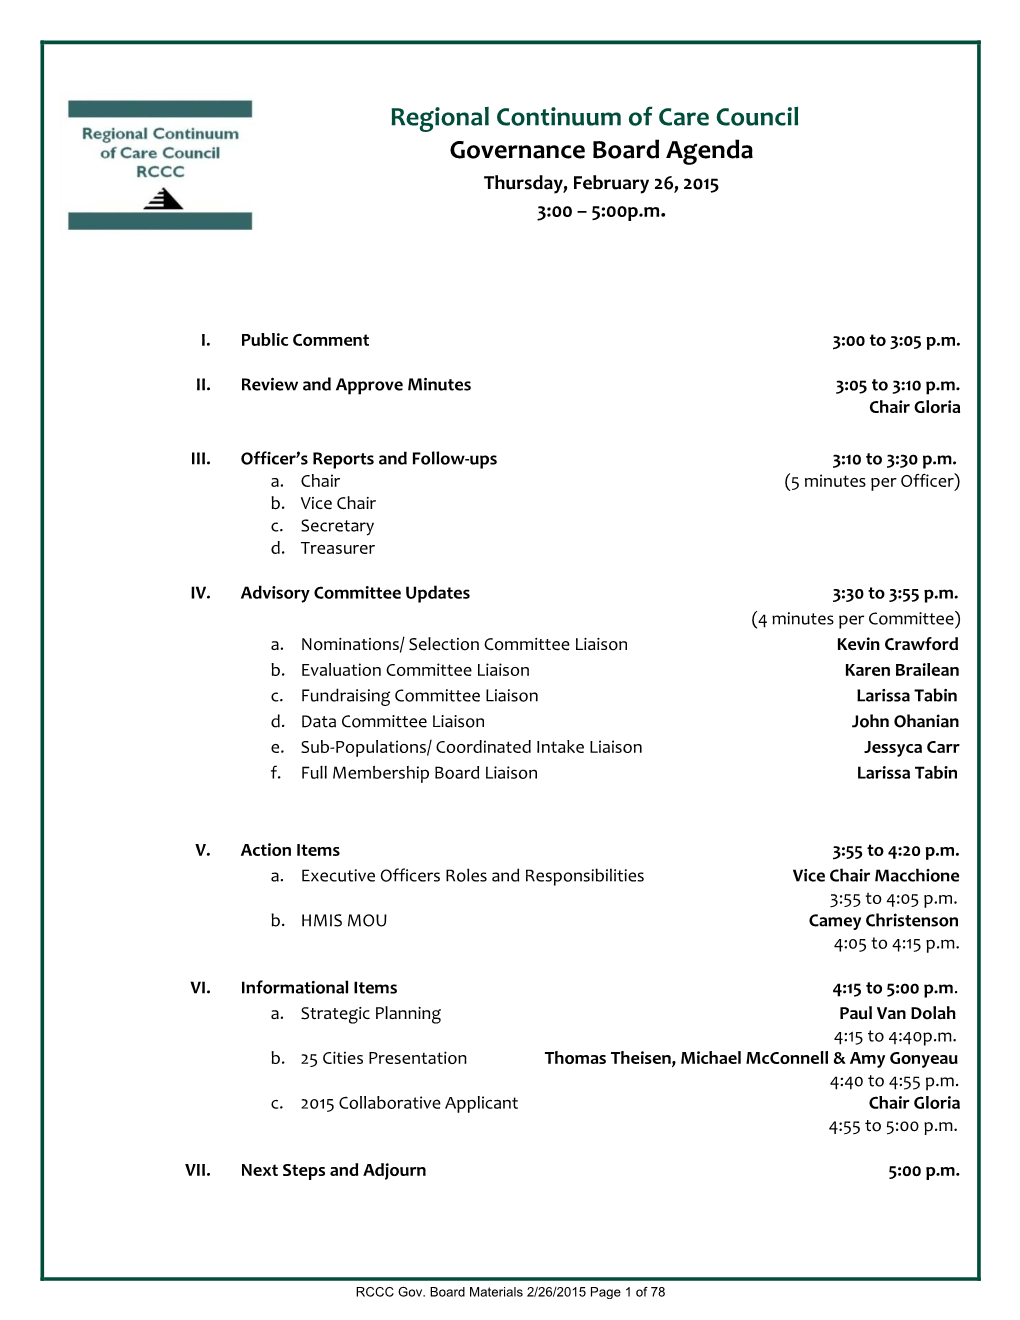 Regional Continuum of Care Council Governance Board Agenda Thursday, February 26, 2015 3:00 – 5:00P.M